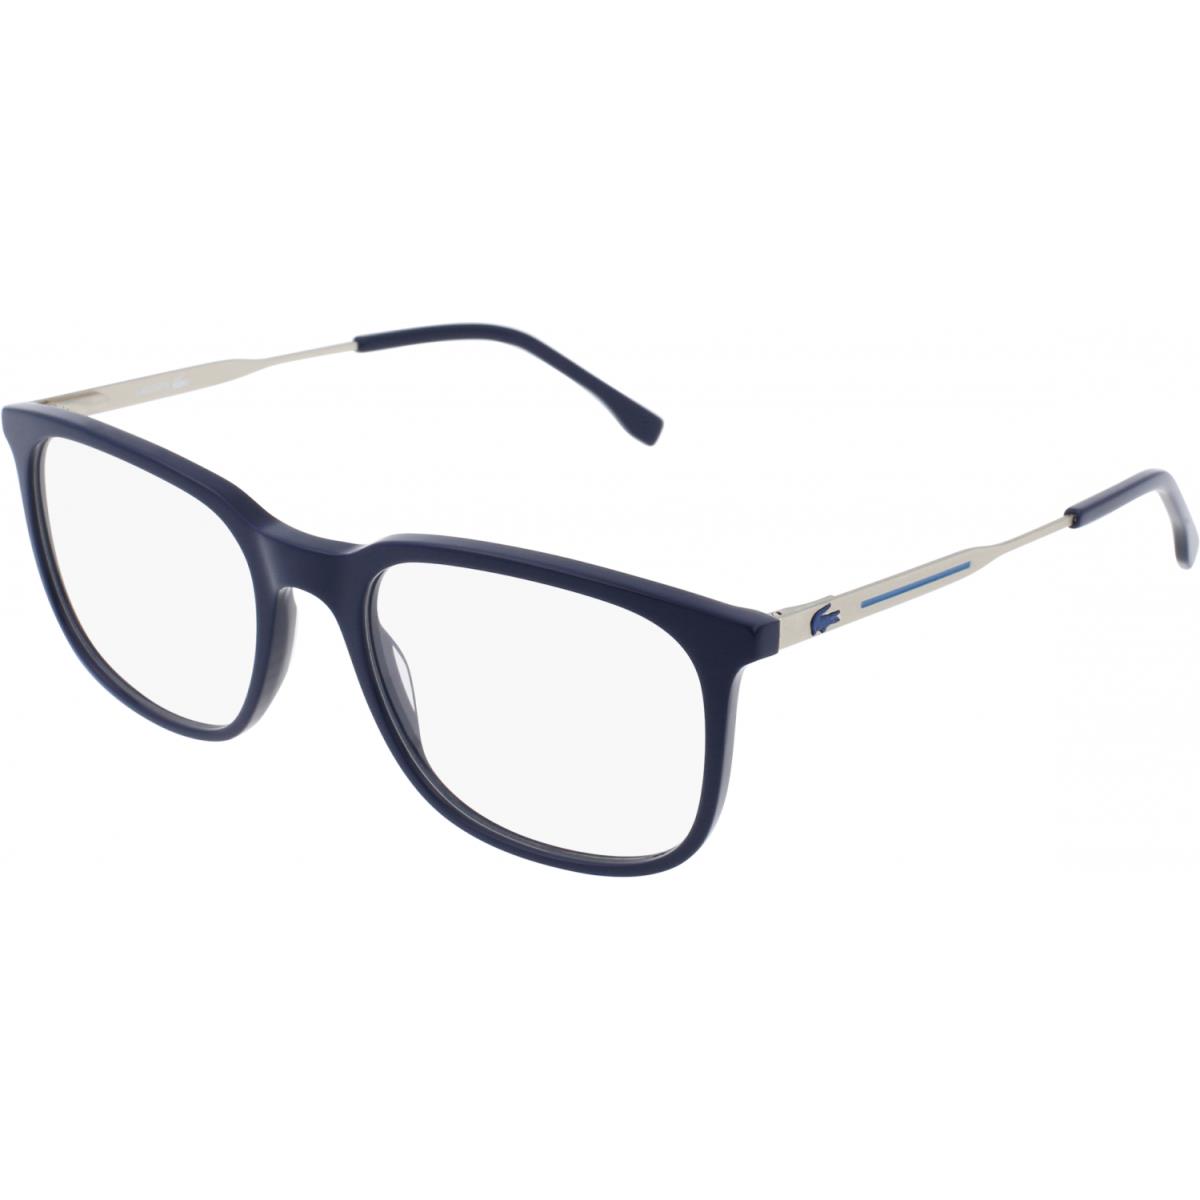 Lacoste L2880 424 54mm Blue Unisex Ophthalmic Rx Eyeglasses Frame - Frame: Blue